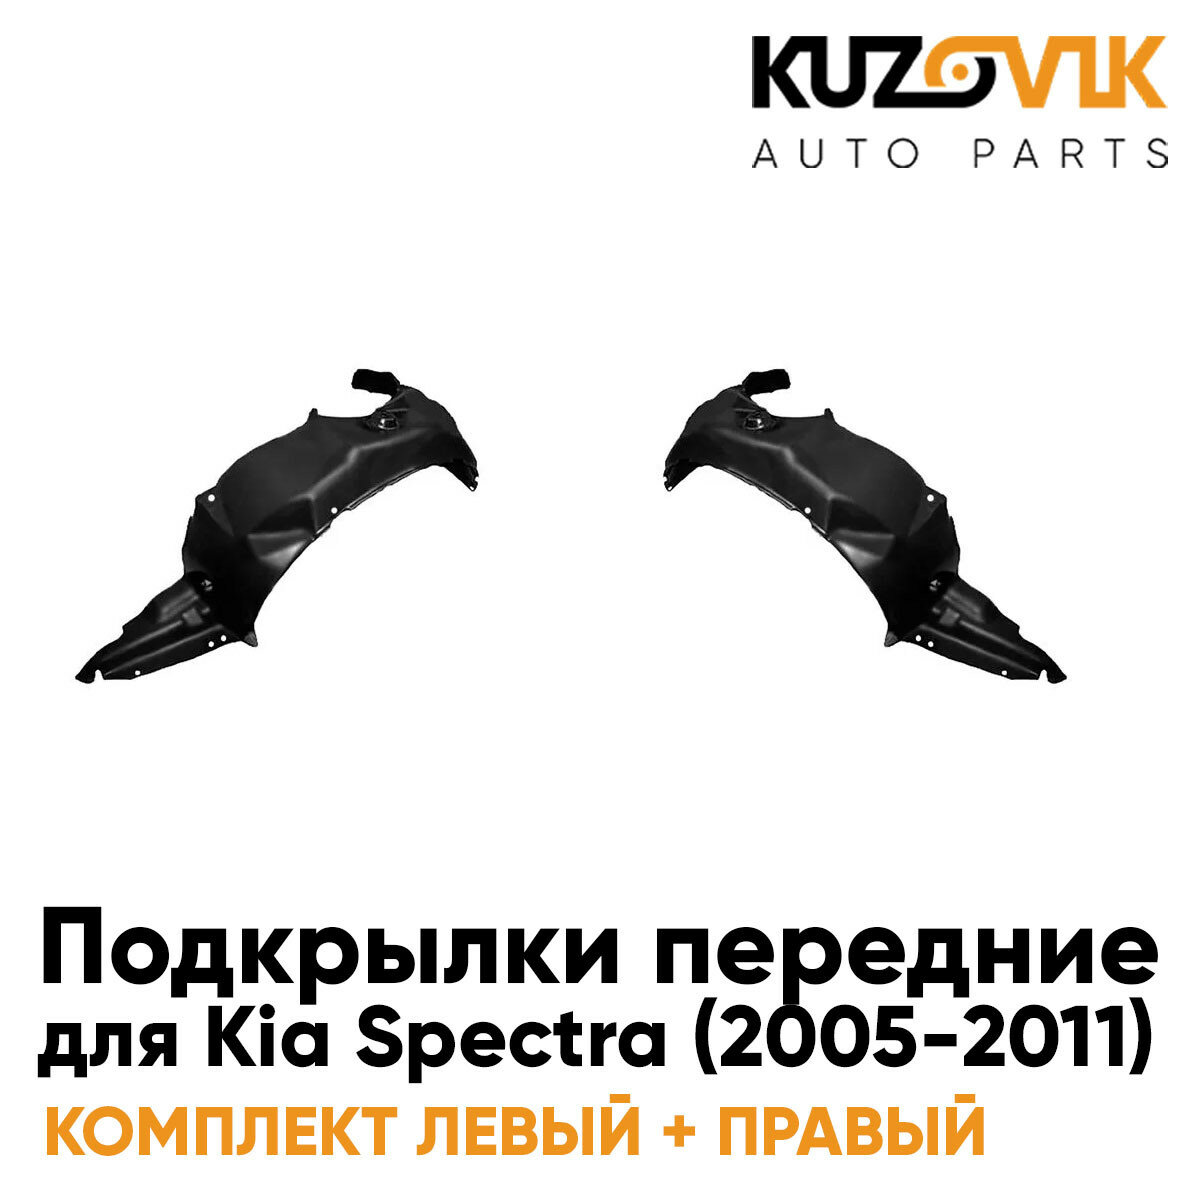 Подкрылки передние комплект Kia Spectra (2005-2011)